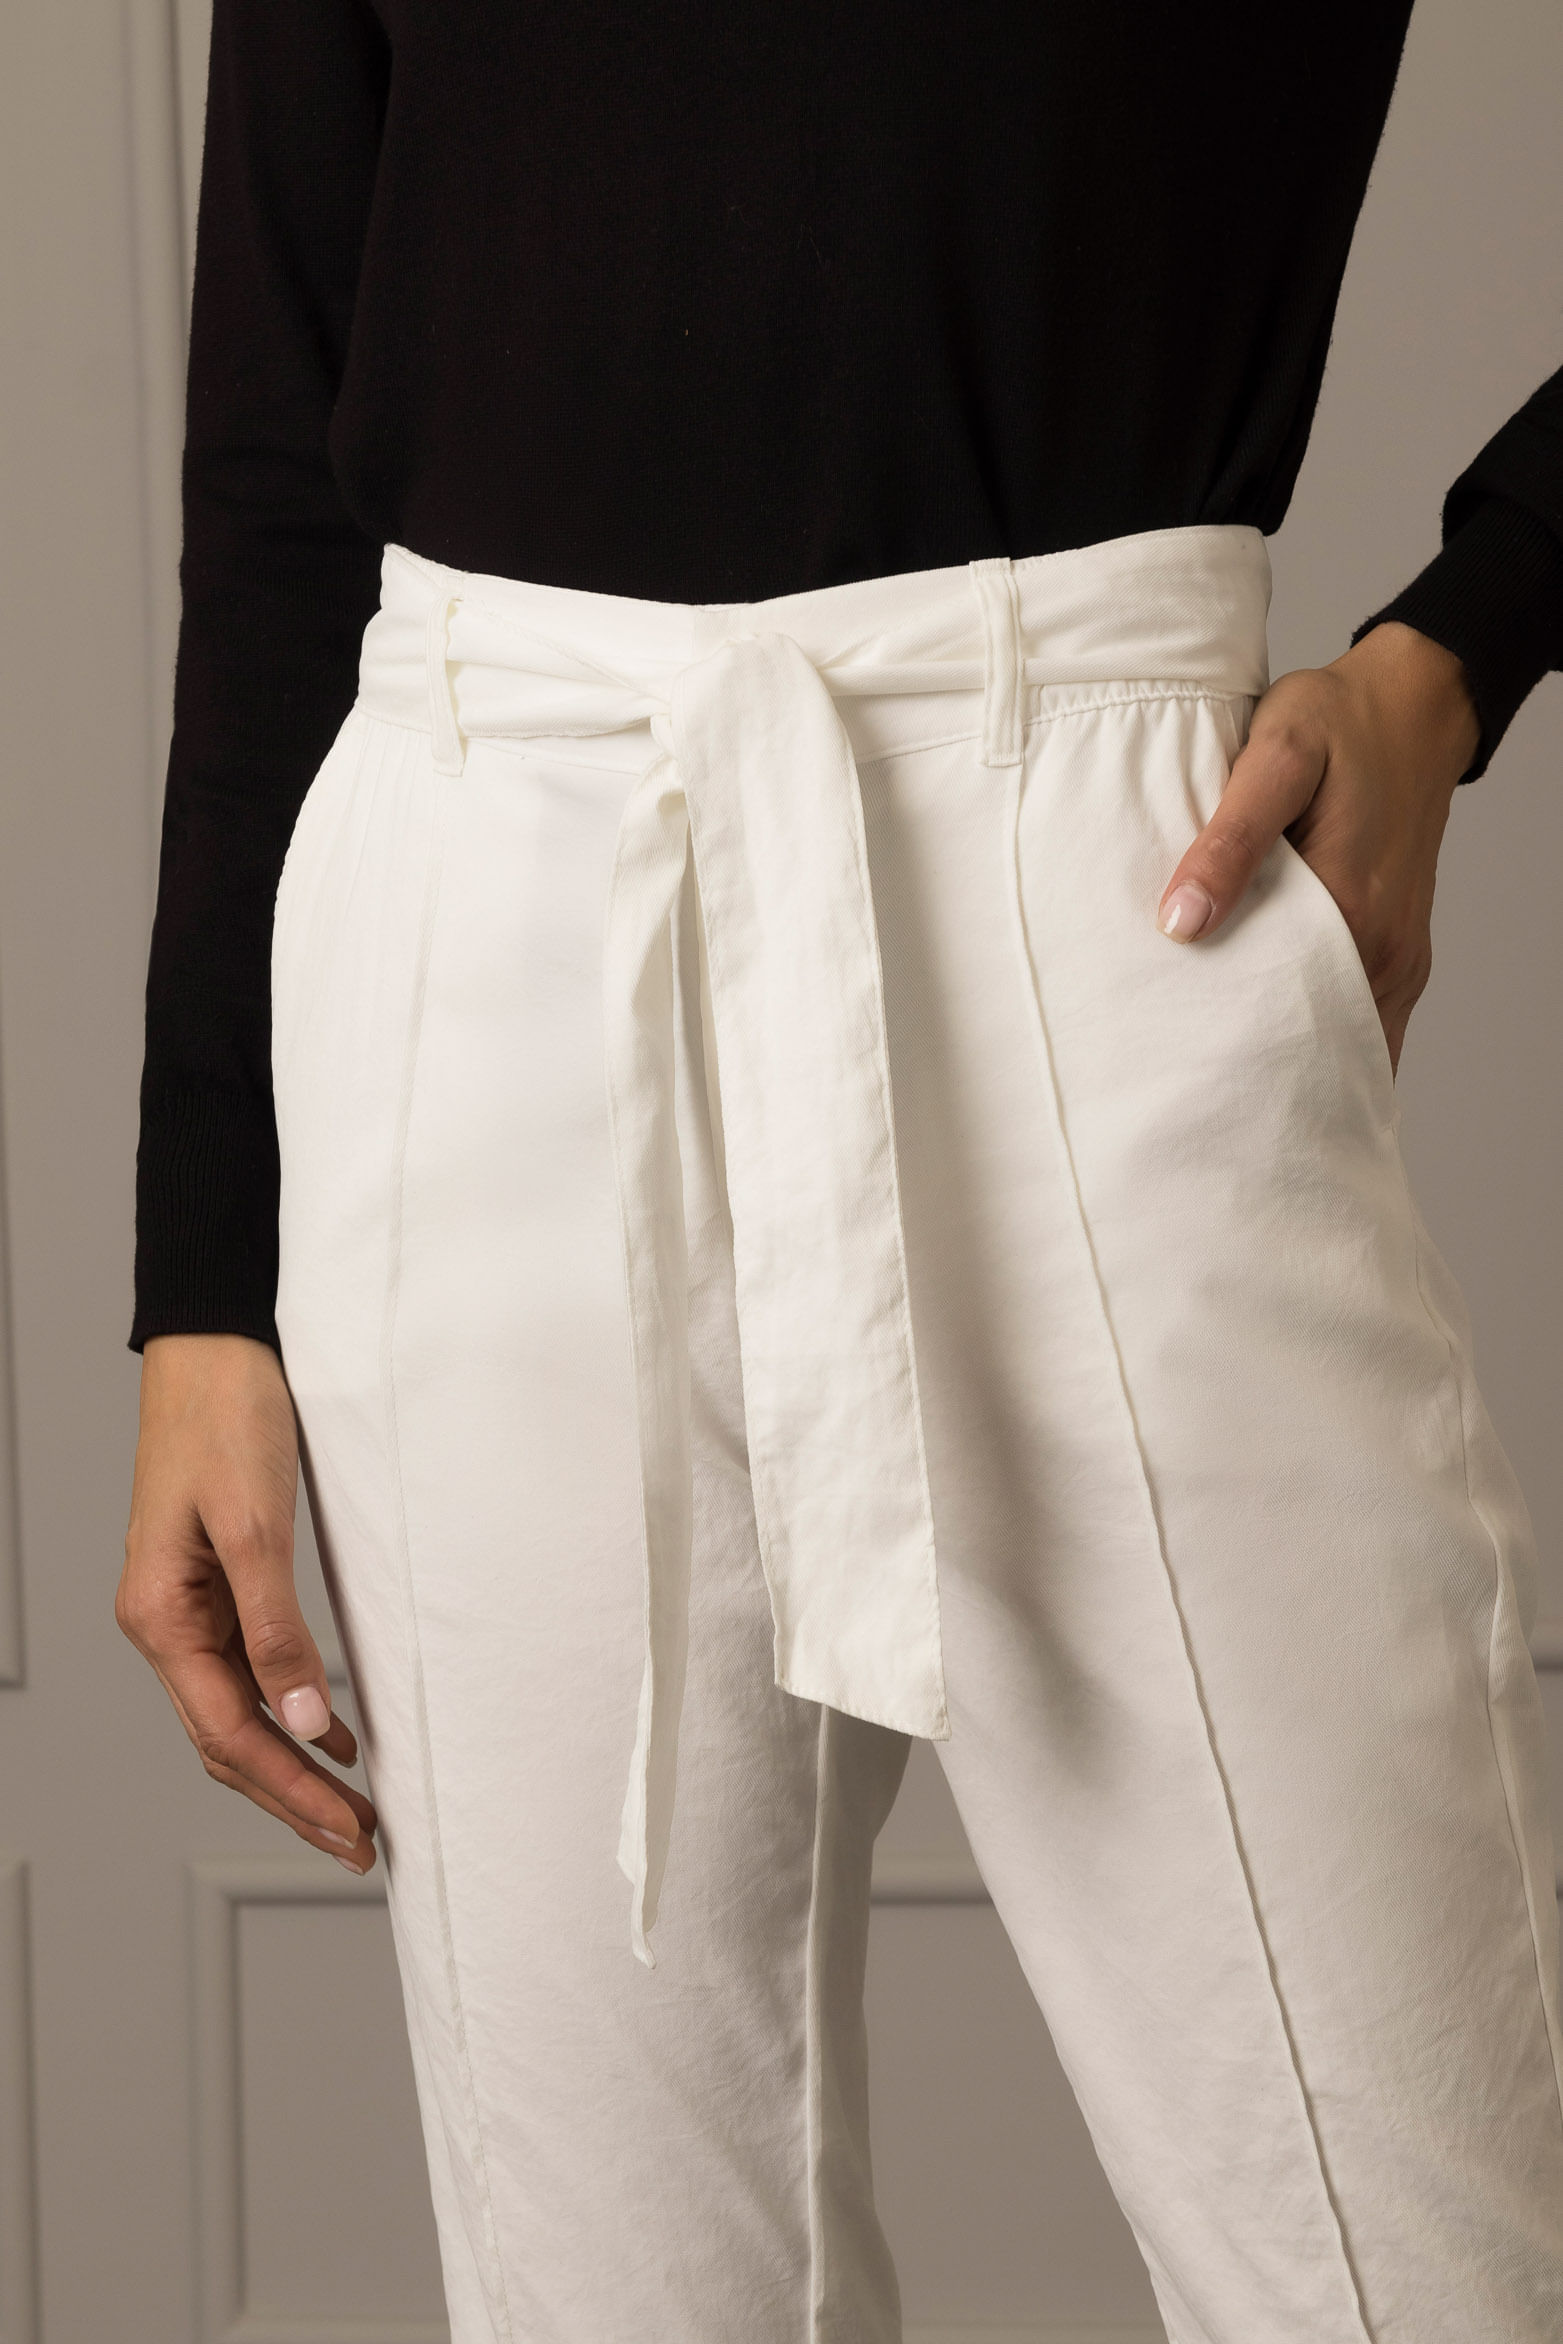 Pantalones mujer / Breshen